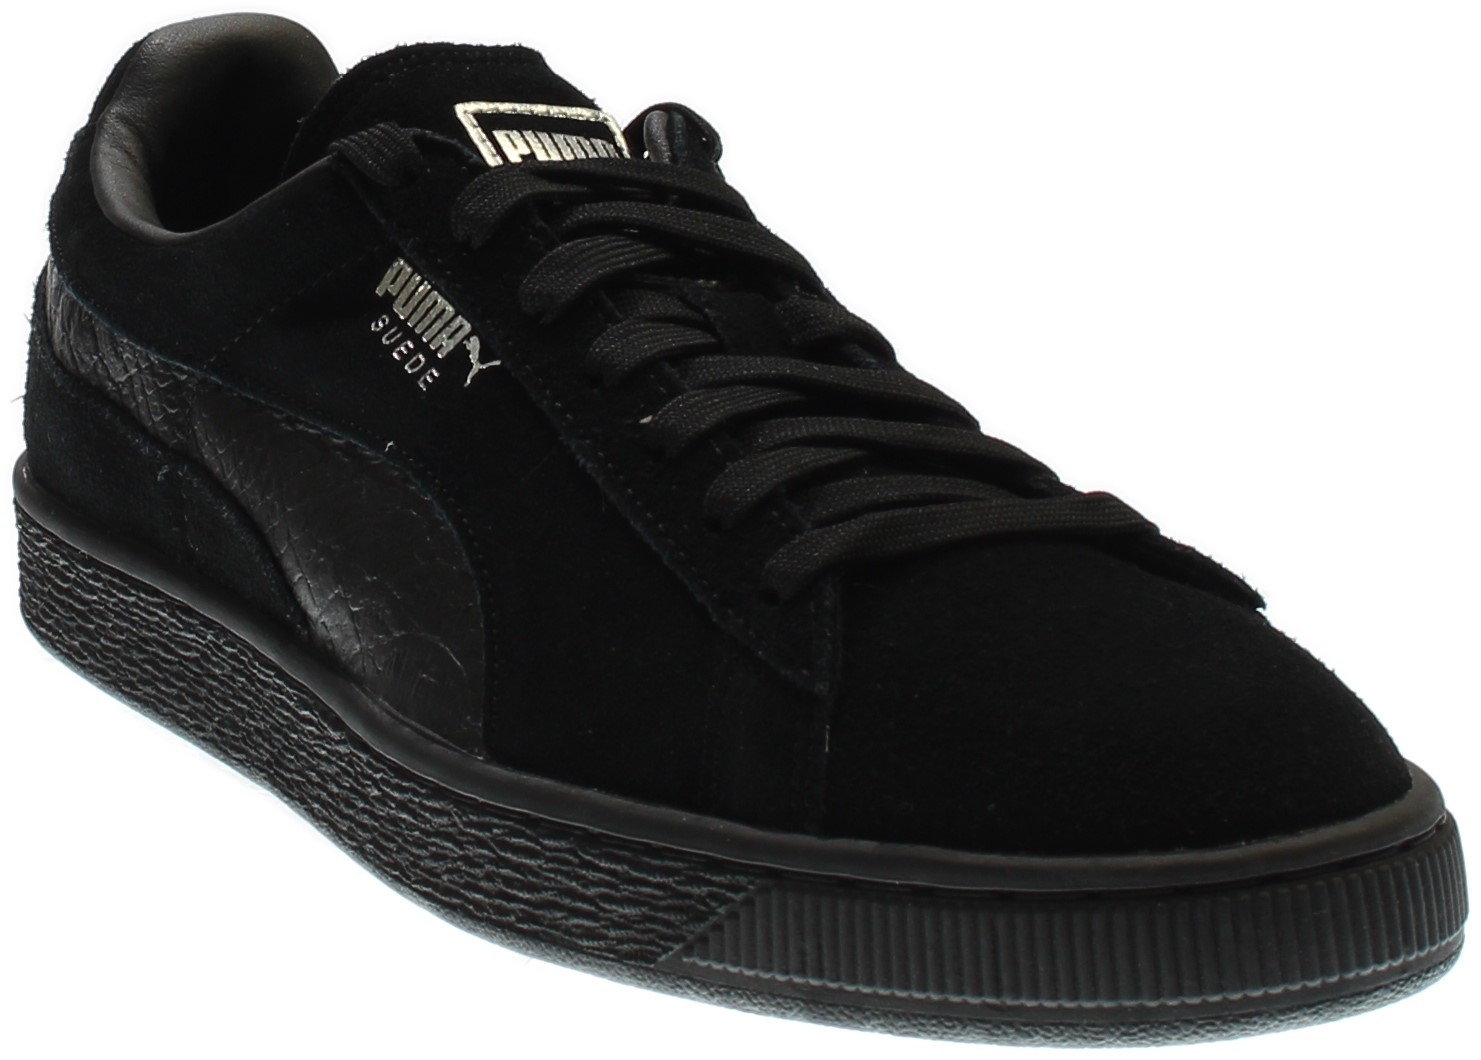 PUMA 363164-06 : Men's Suede Classic Mono Reptile Fashion Sneaker, Black (Puma Black-puma Silv, 10.5 D(M) US) - image 1 of 7